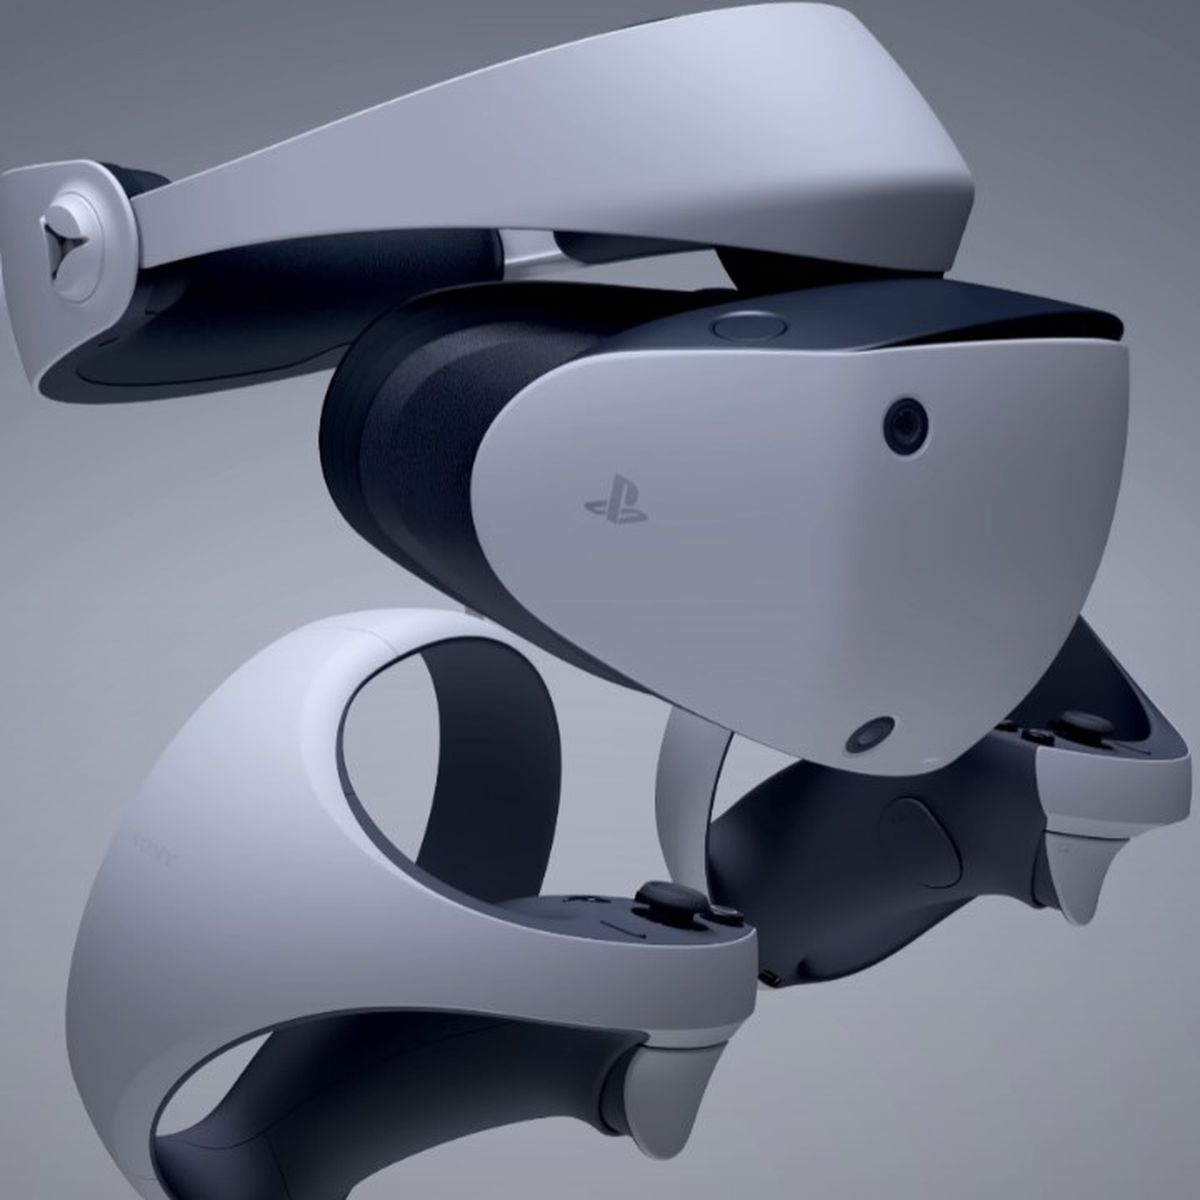 Precio y fecha de lanzamiento de las nuevas gafas PS VR2 de